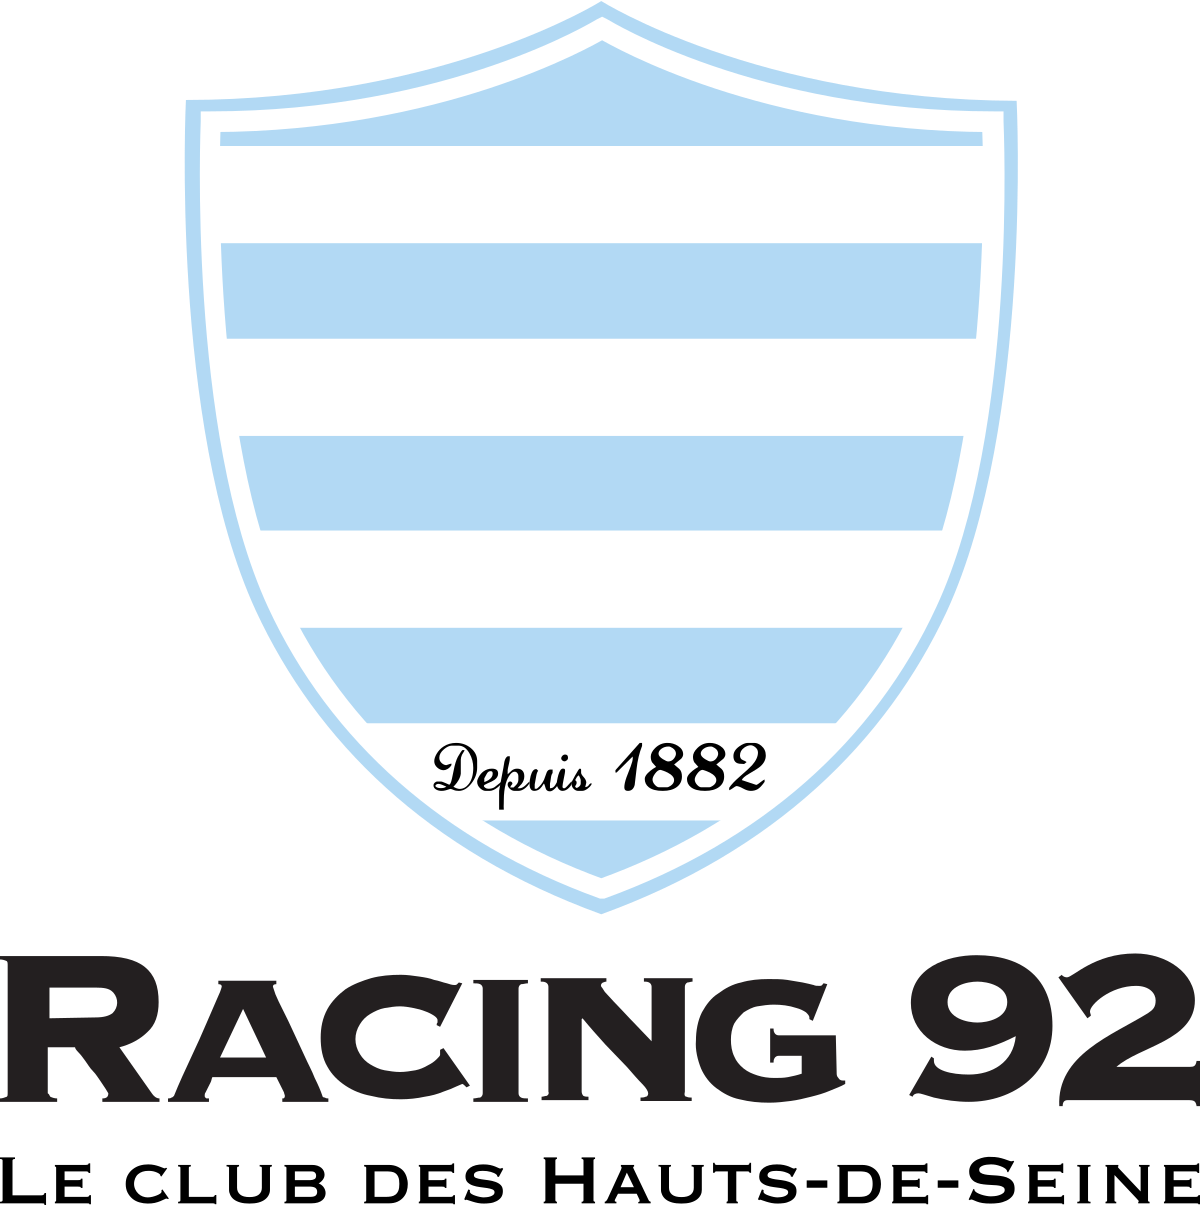 Logo du Racing 92